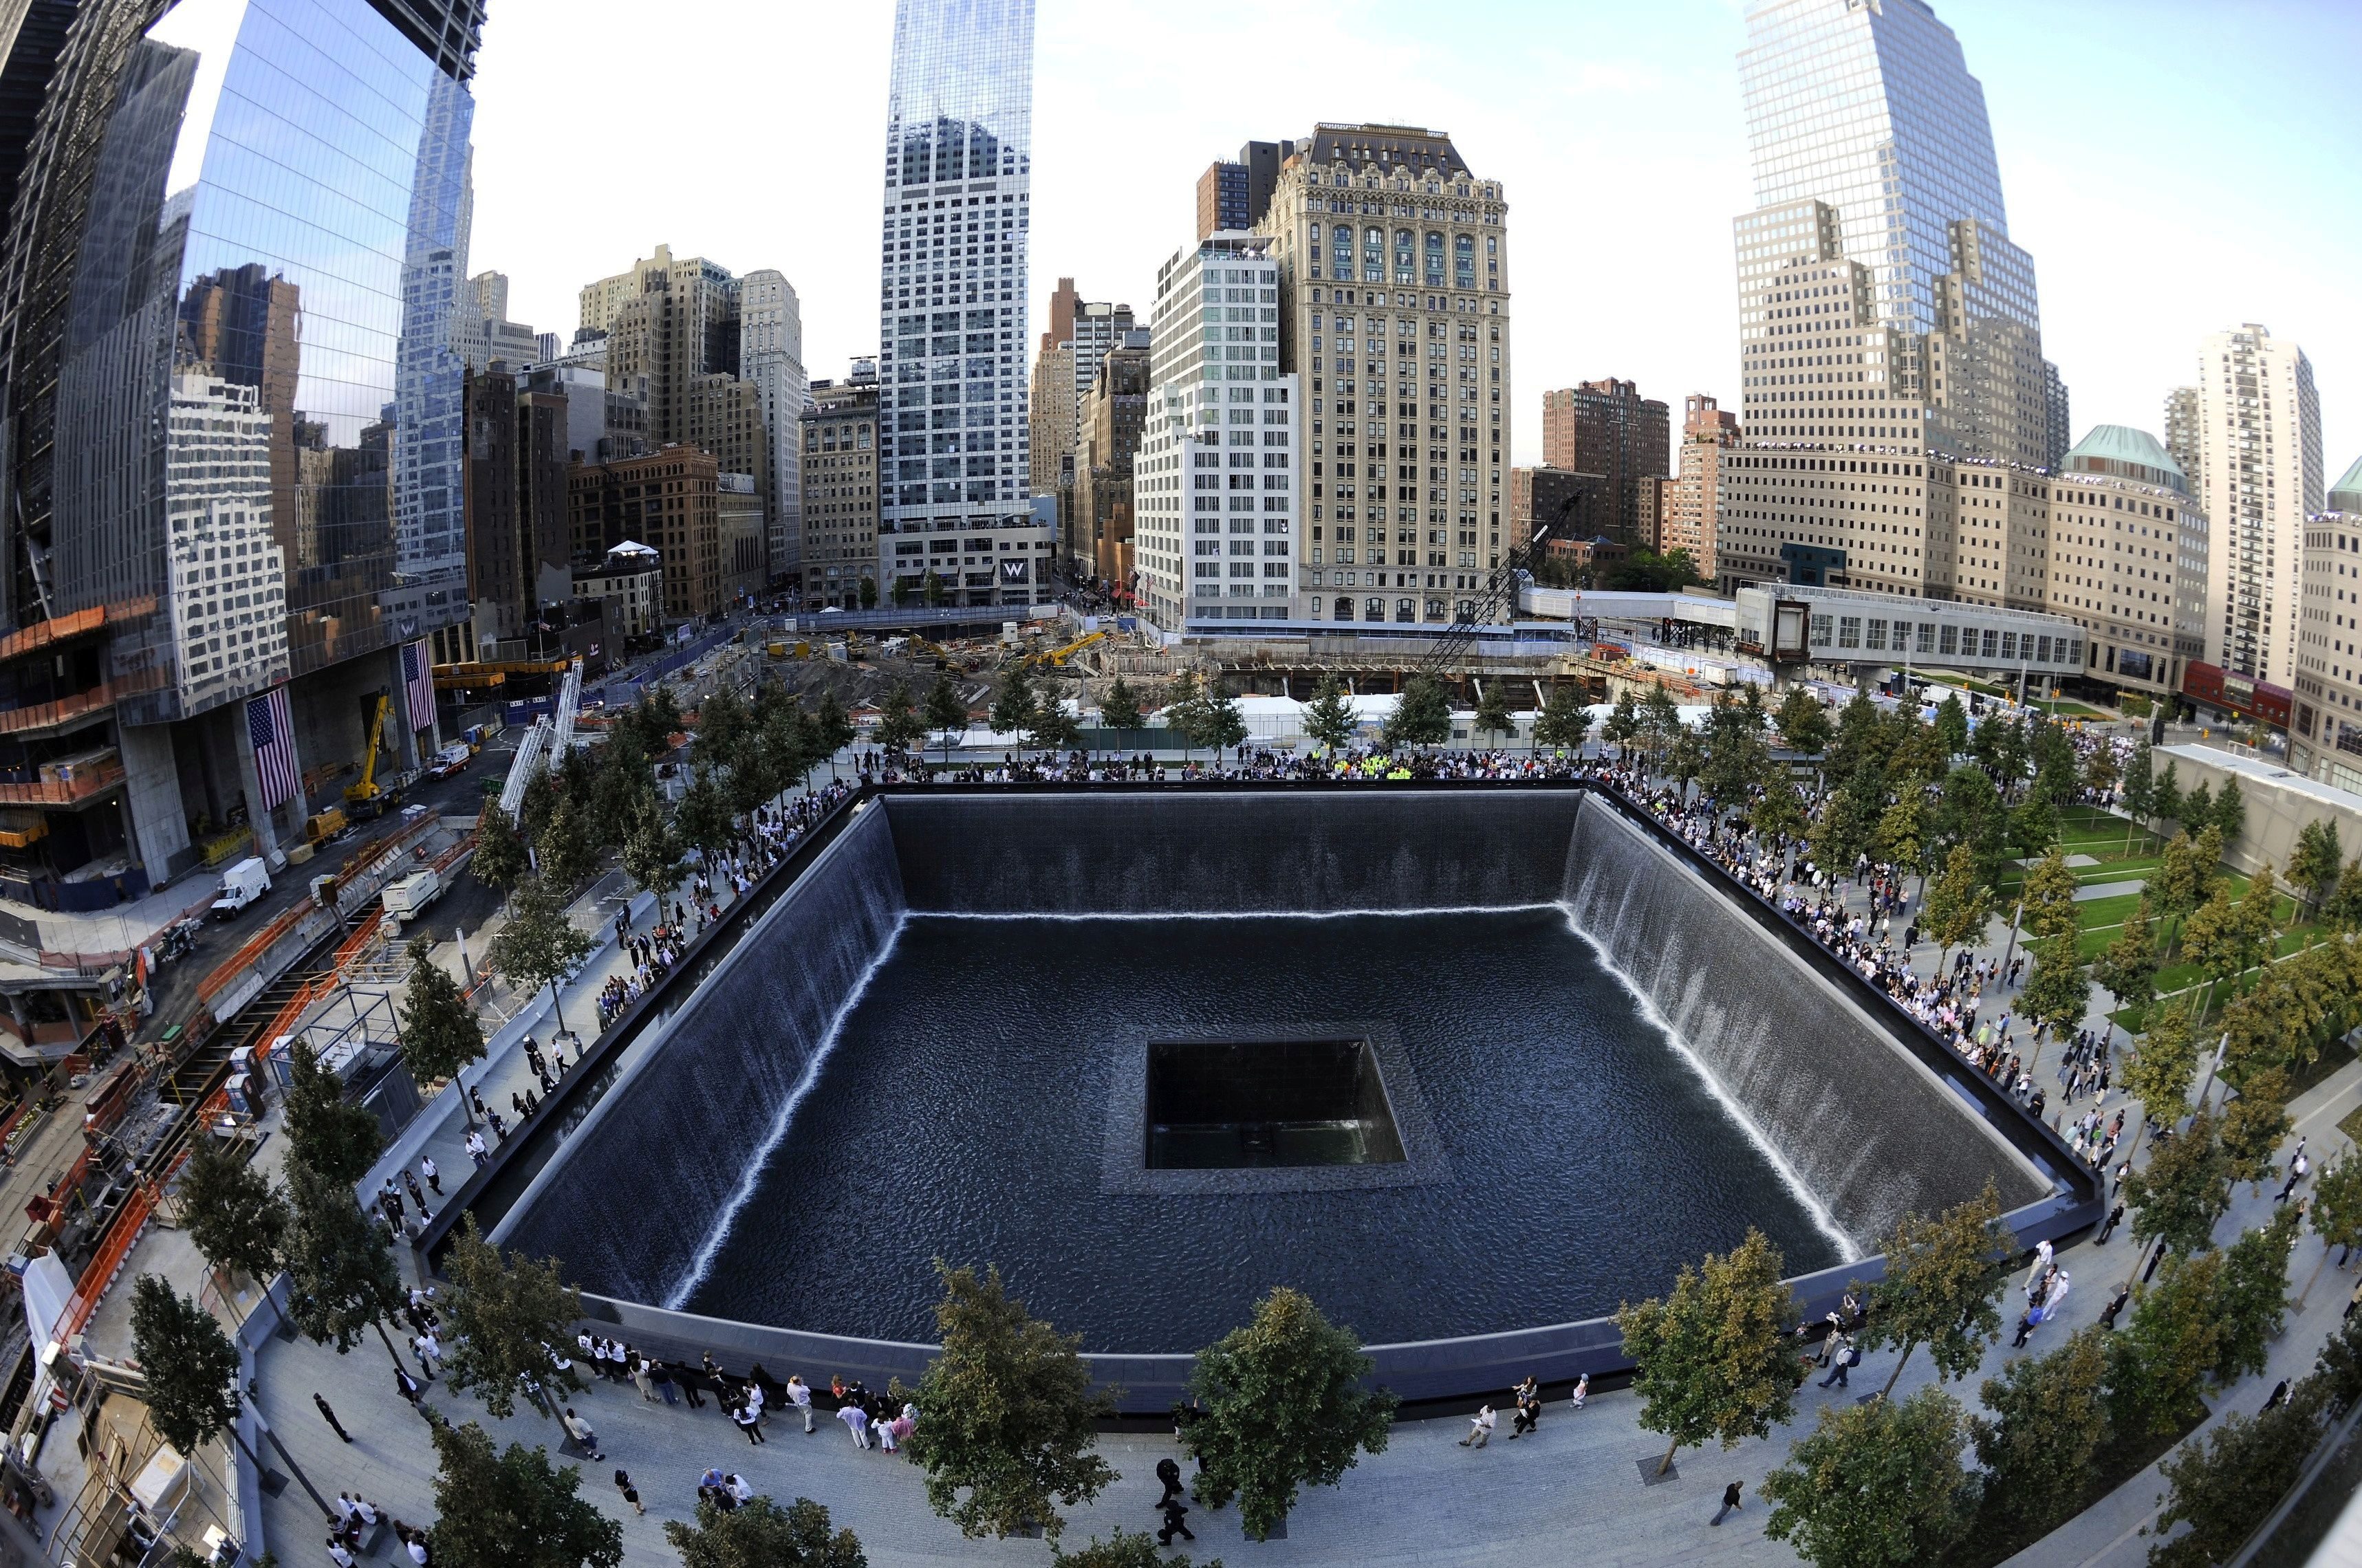 Biden to visit all 3 sites of September 11 attacks – White House